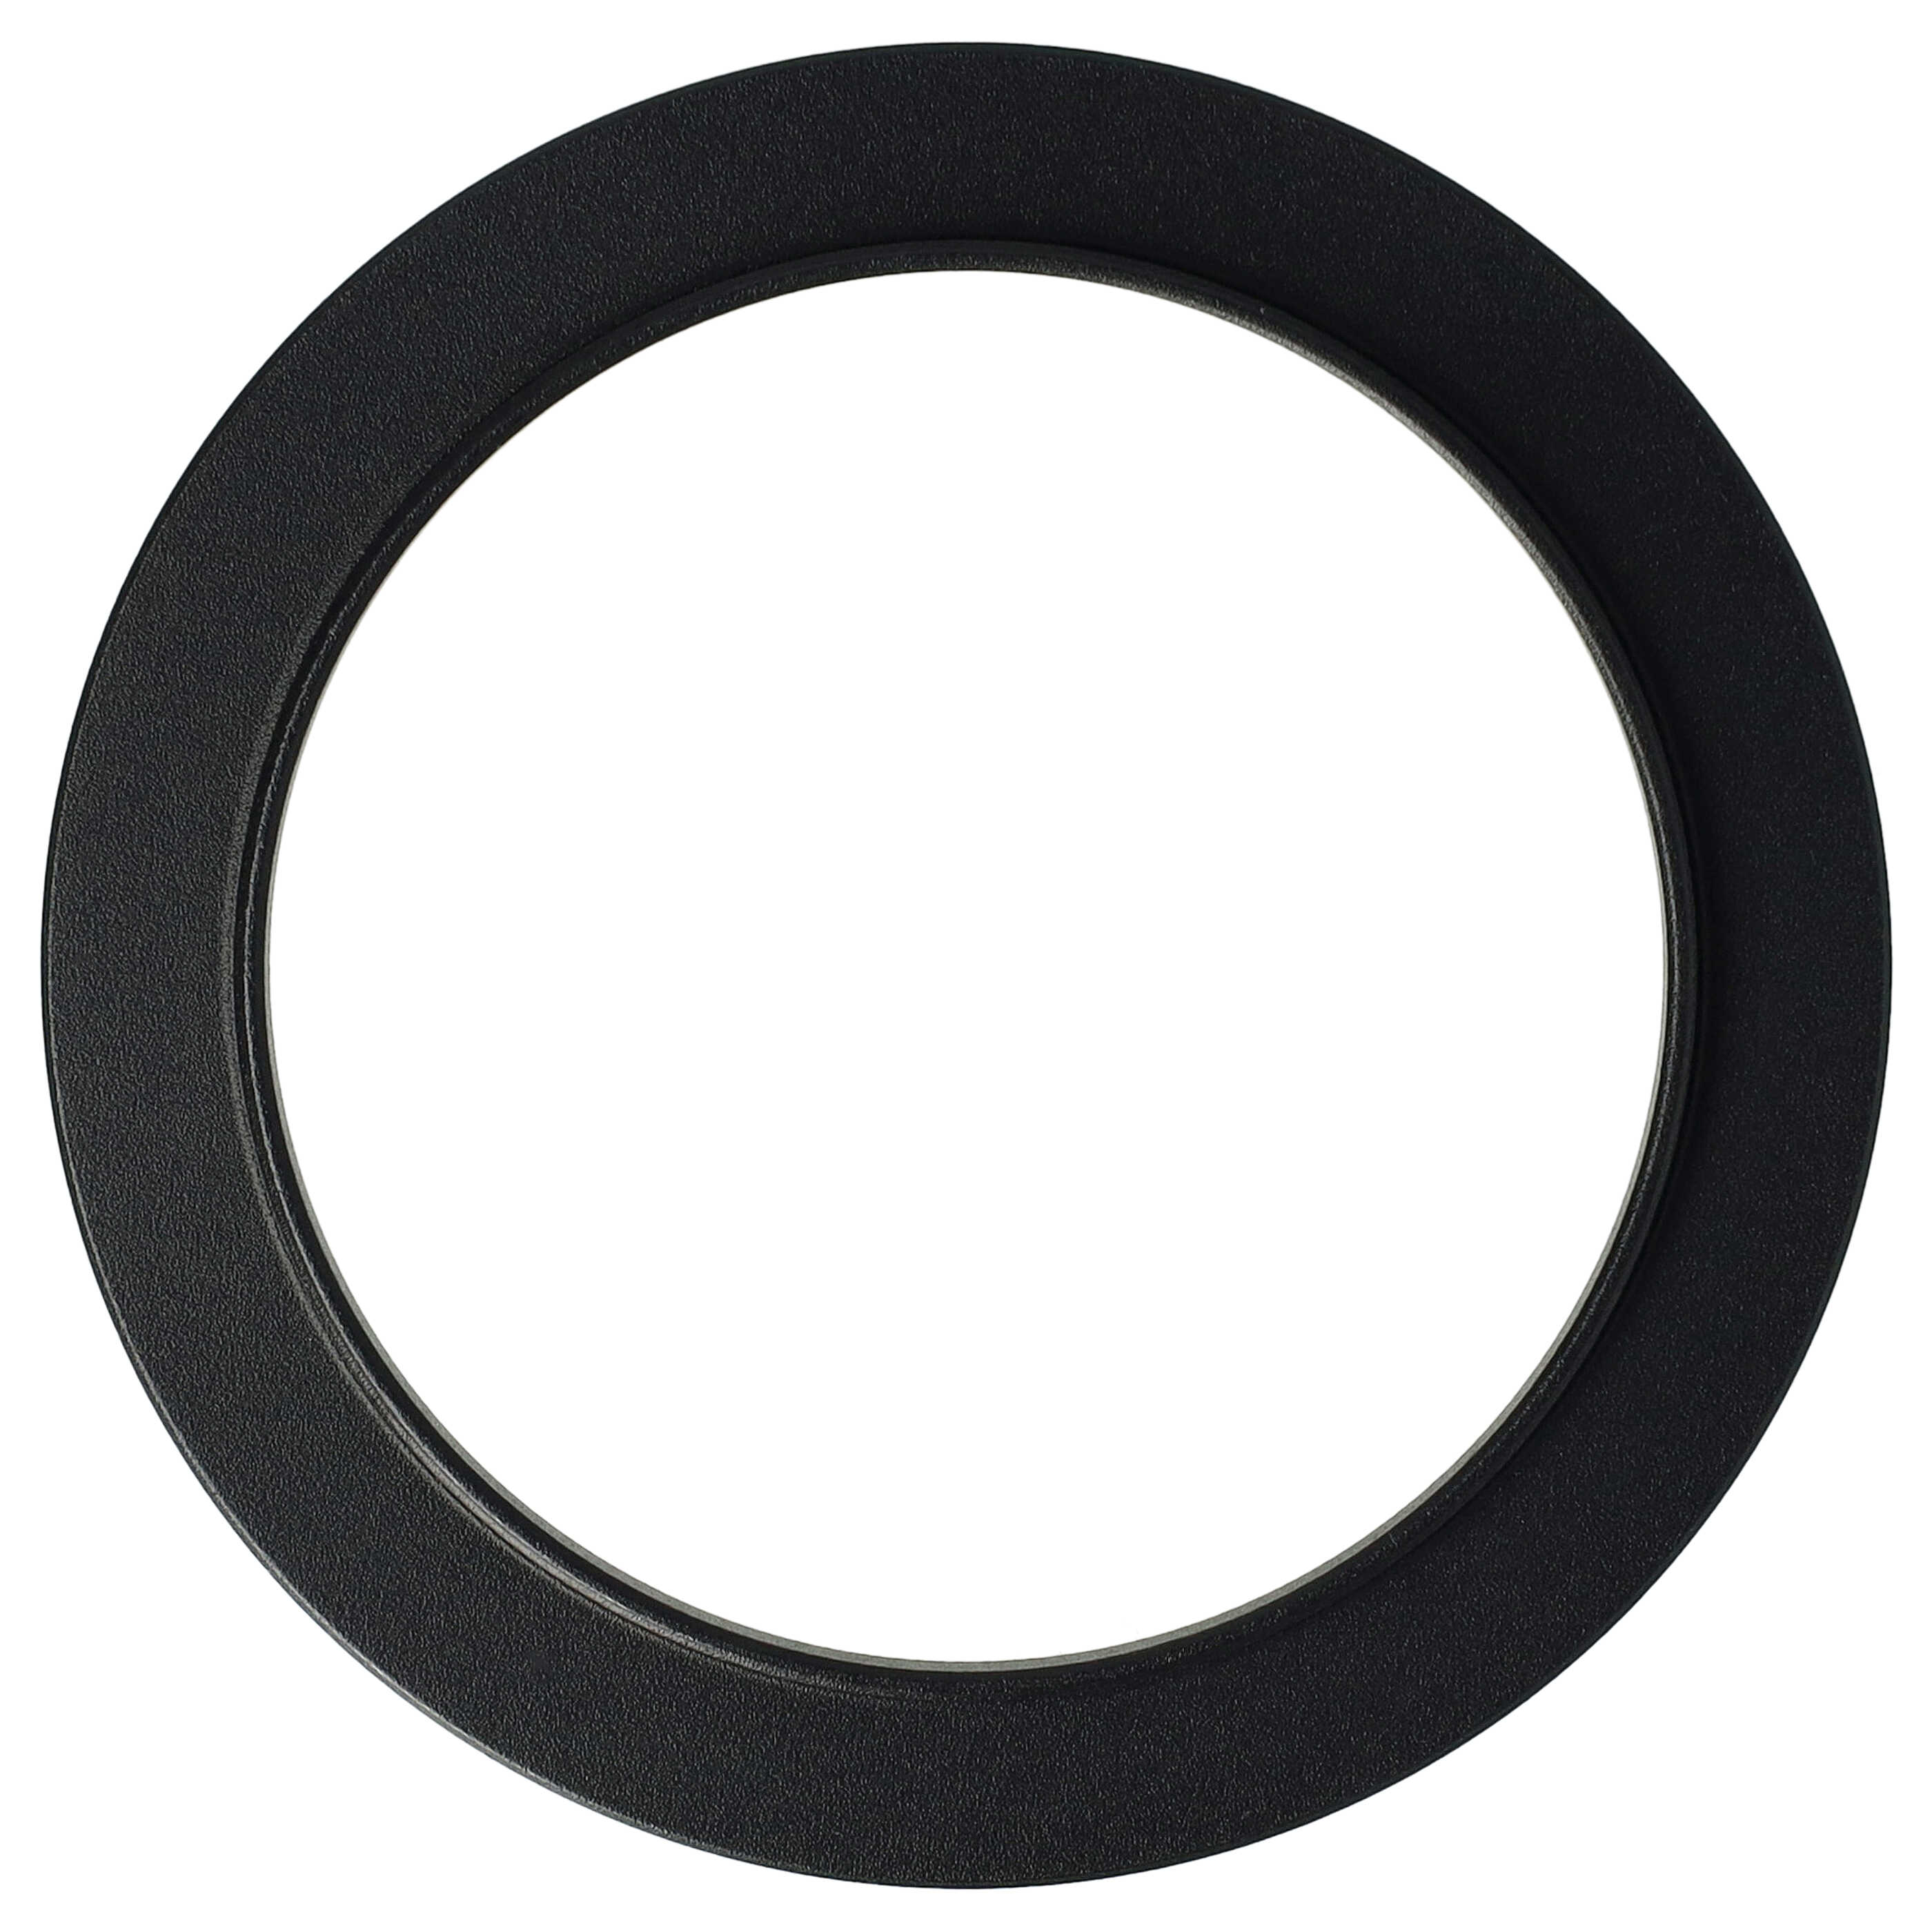 Step-Up-Ring Adapter 55 mm auf 67 mm passend für diverse Kamera-Objektive - Filteradapter